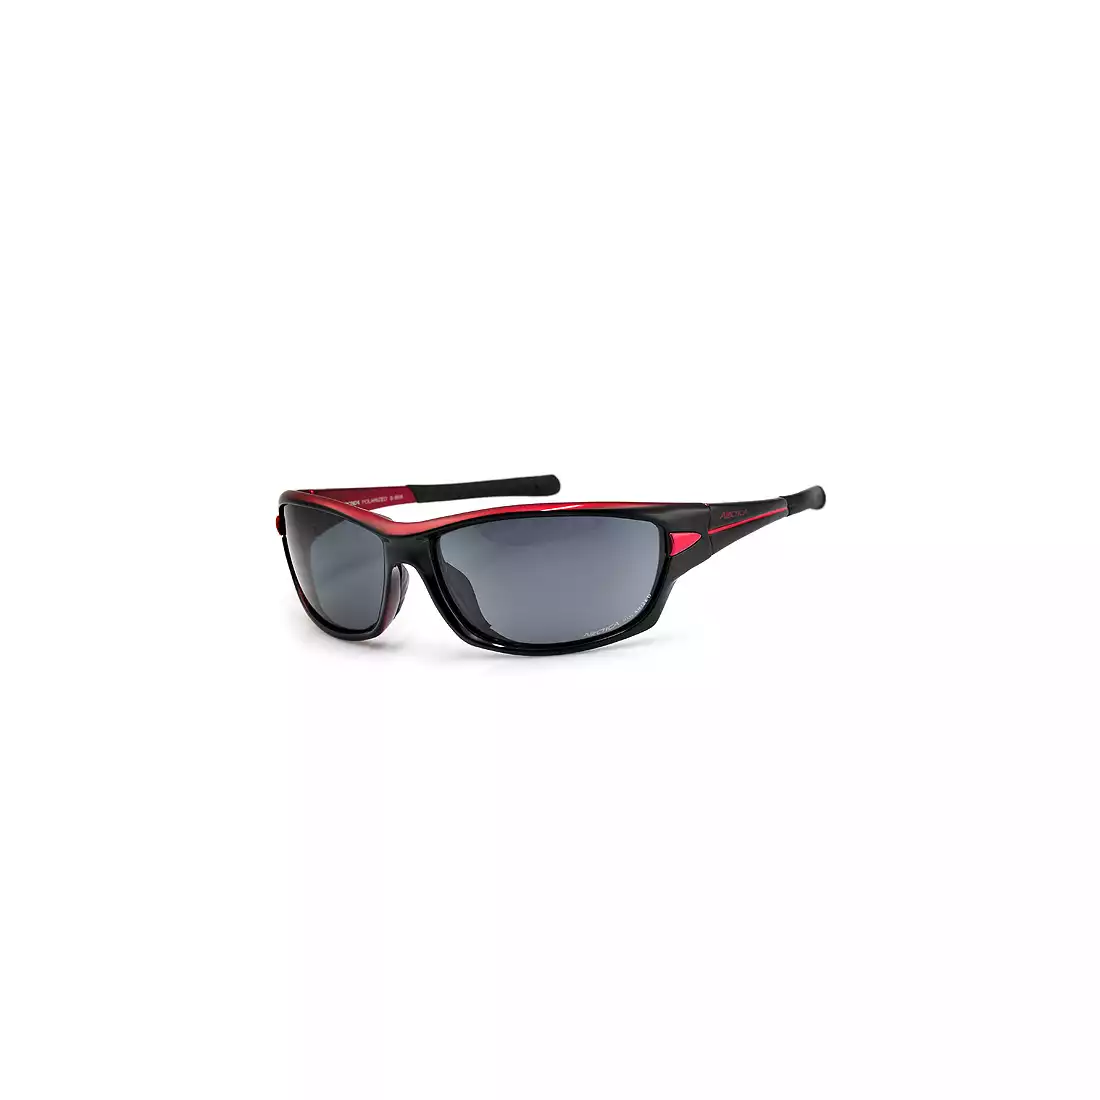 ARCTICA okulary sportowe S-90A - kolor: Czarno-czerwony